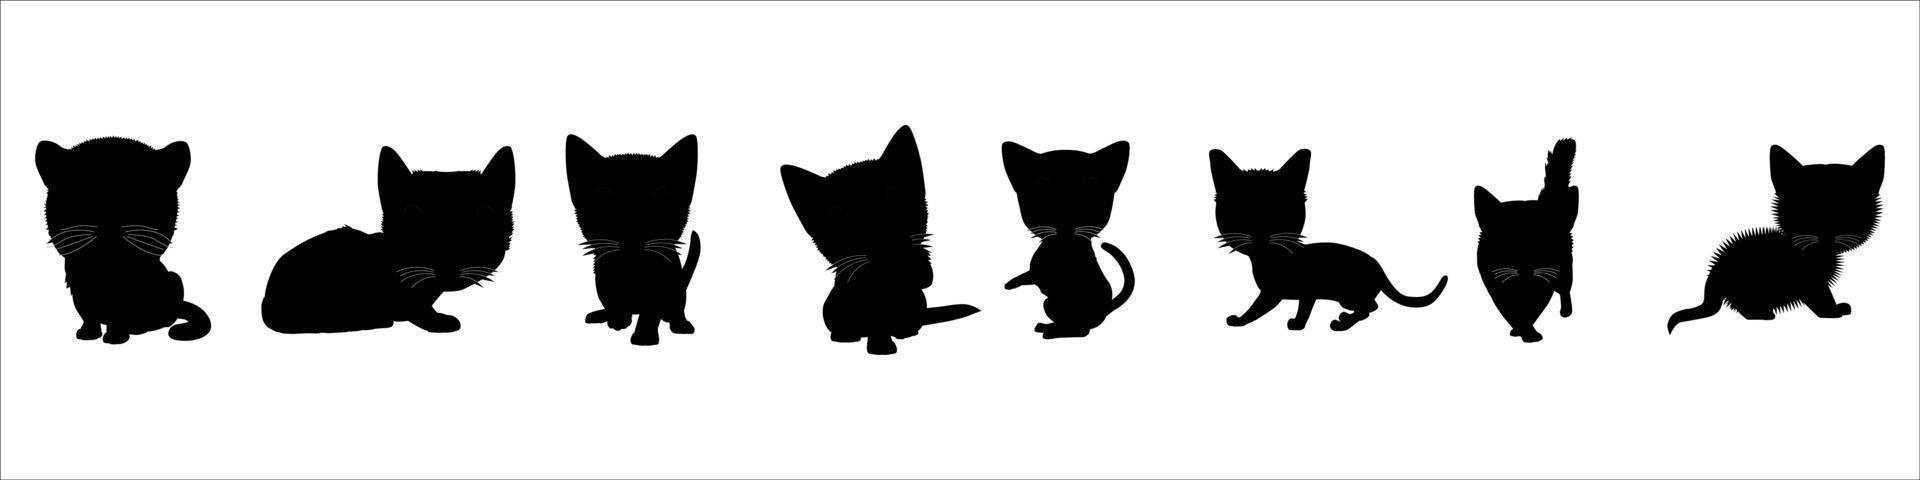 schwarze Silhouette der Katze. vektor